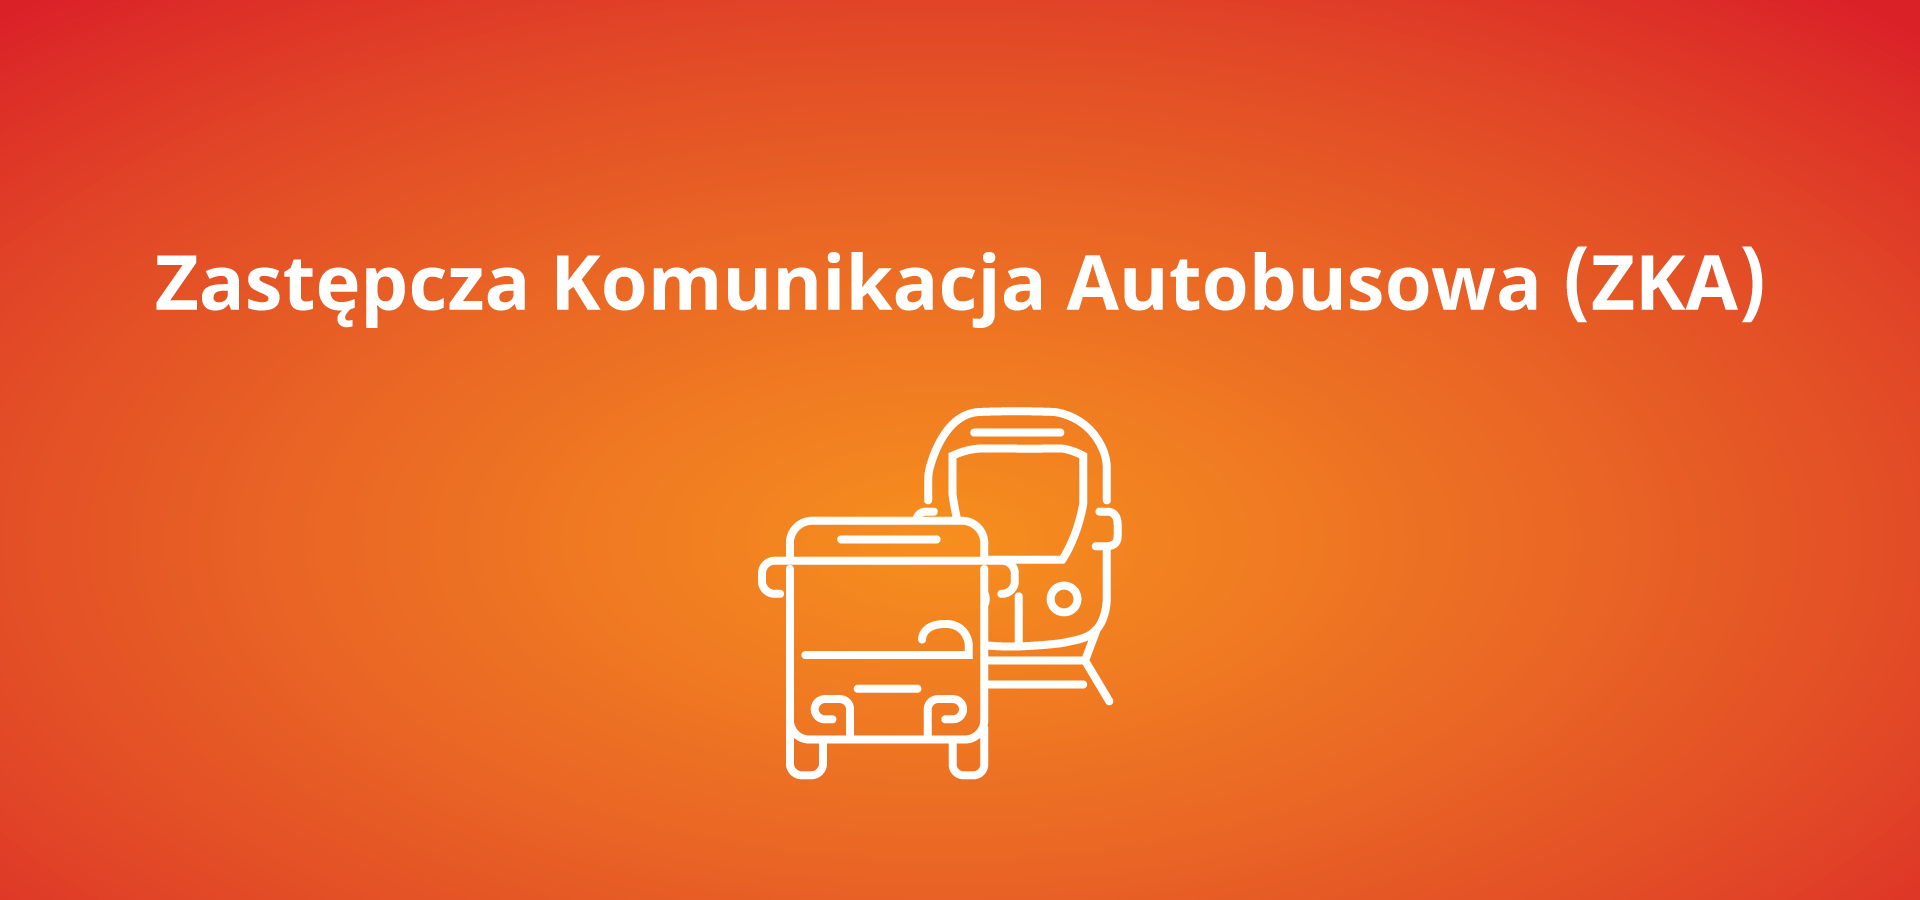 Zastępcza Komunikacja Autobusowa Kielce - Busko-Zdrój - Kielce